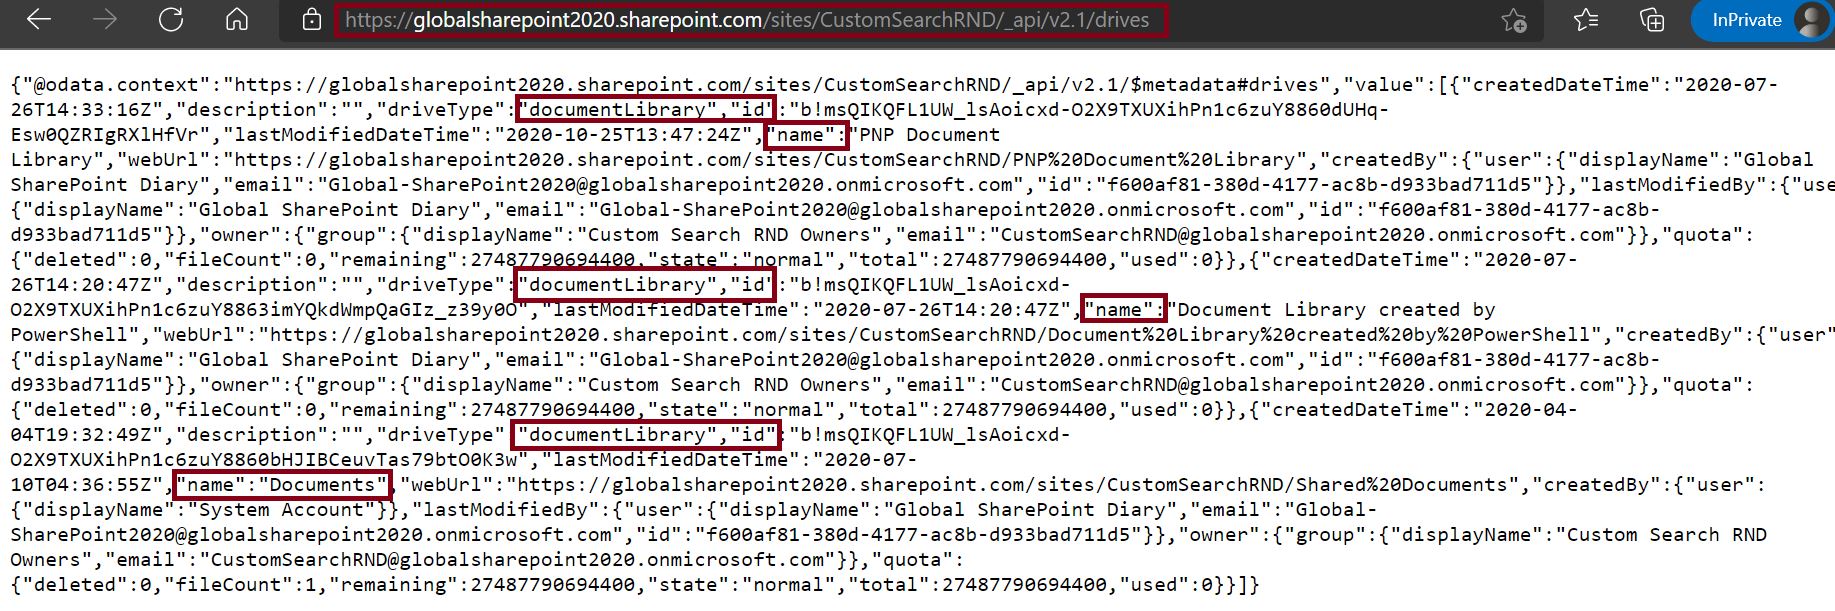 Get all custom document library metadata details using SharePoint API